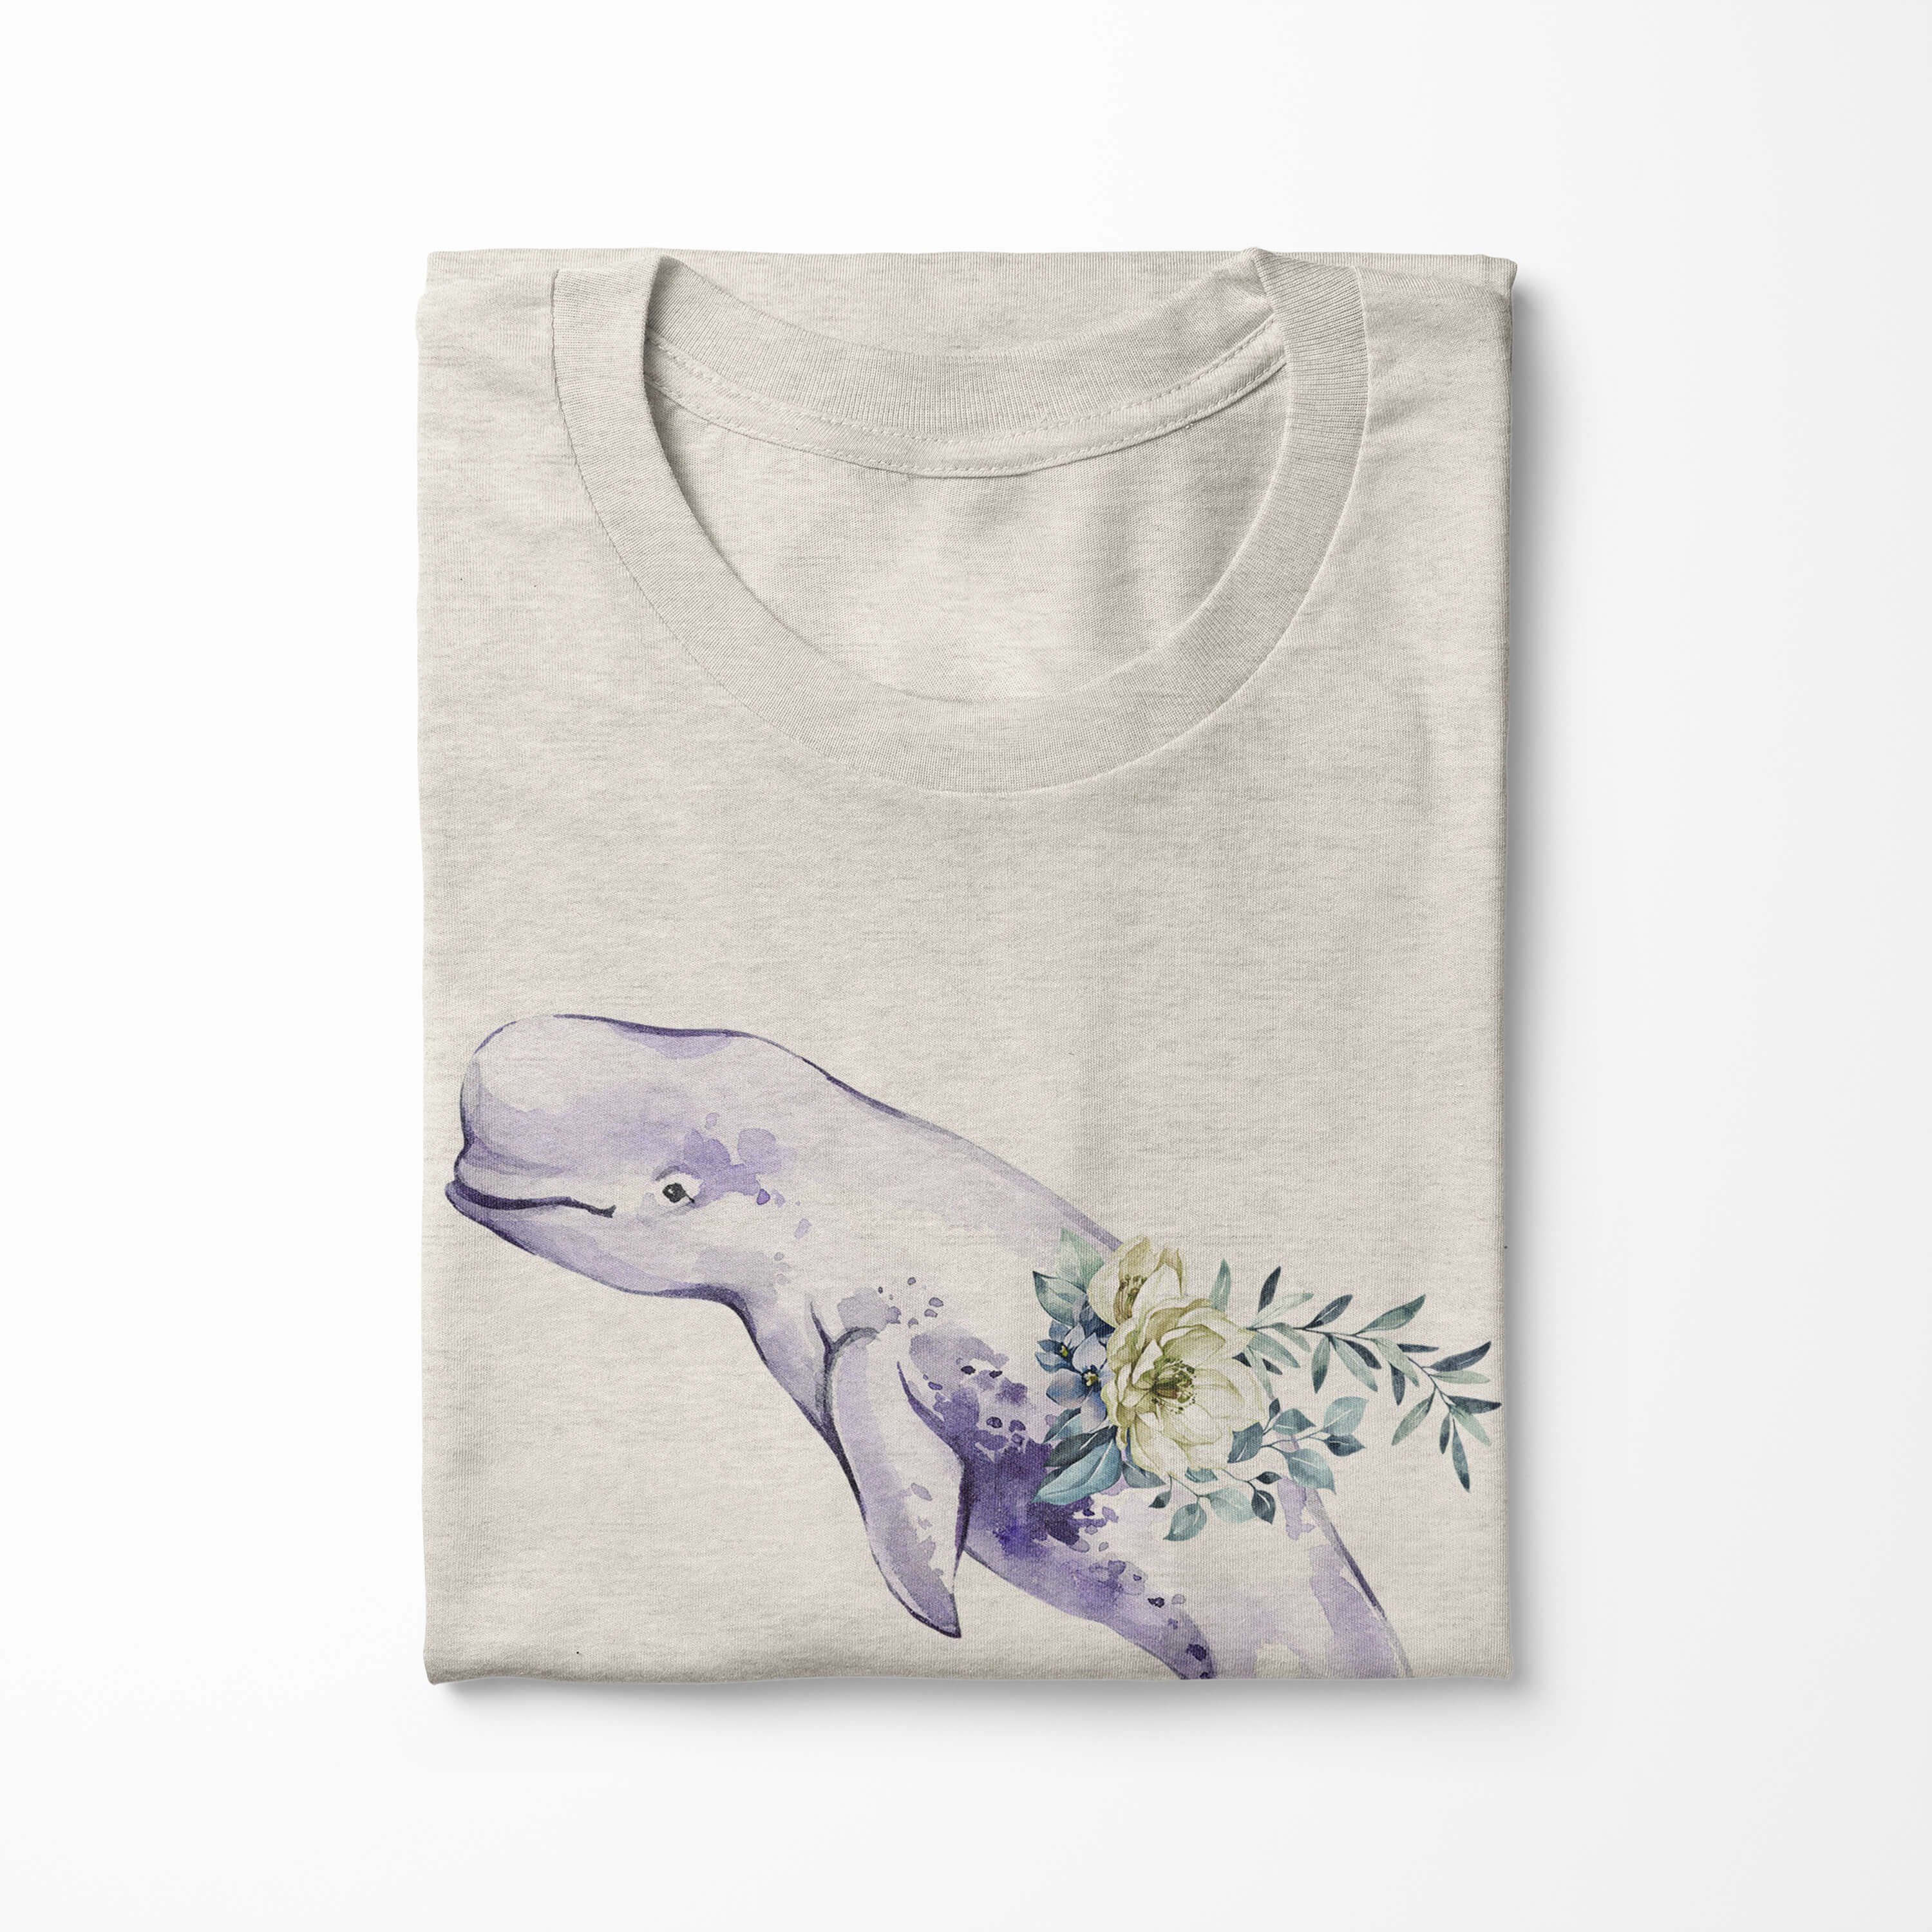 T-Shirt 100% Weißwal Motiv Sinus Shirt Nachhaltig Beluga Ökomo gekämmte (1-tlg) Herren T-Shirt Art Wasserfarben Bio-Baumwolle